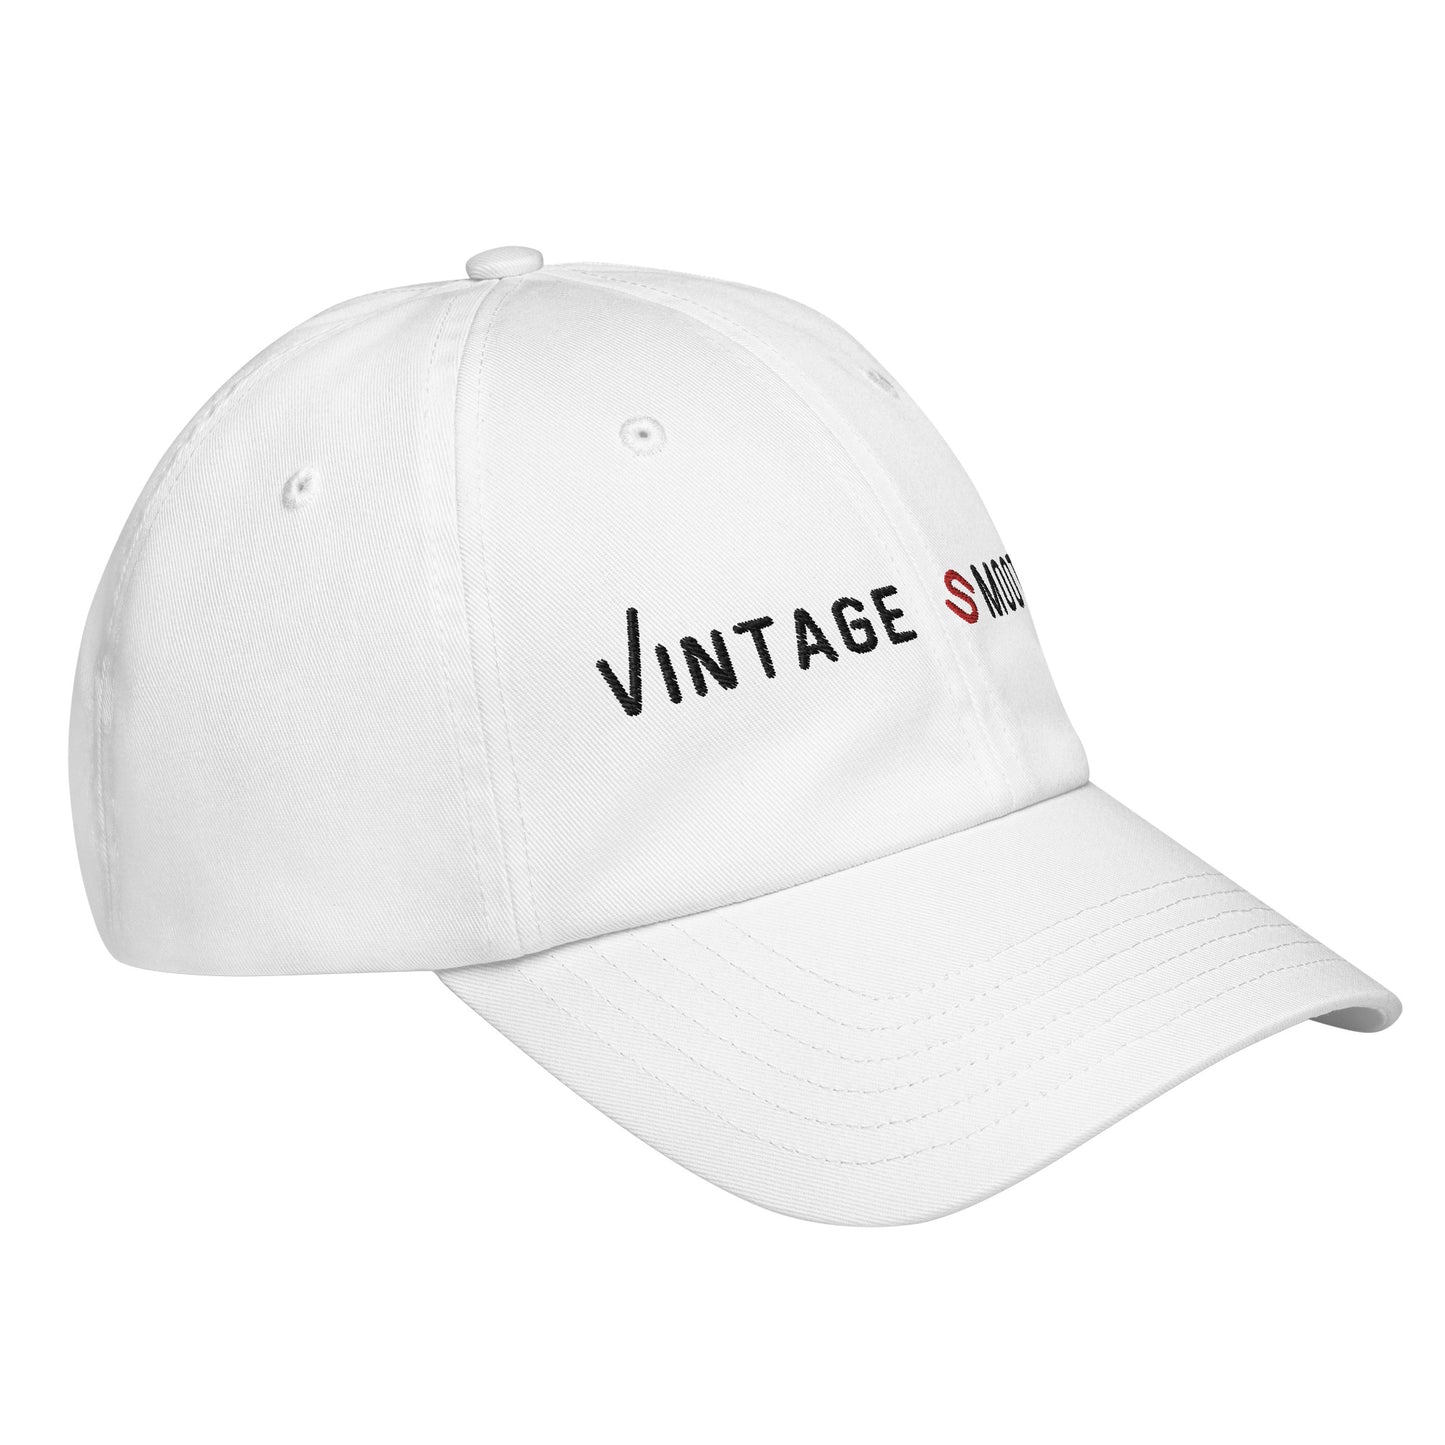 Gorra Vintage Smooth Baseball Cap - Diseño Exclusivo de 78G Lifestyle - Under Armour®